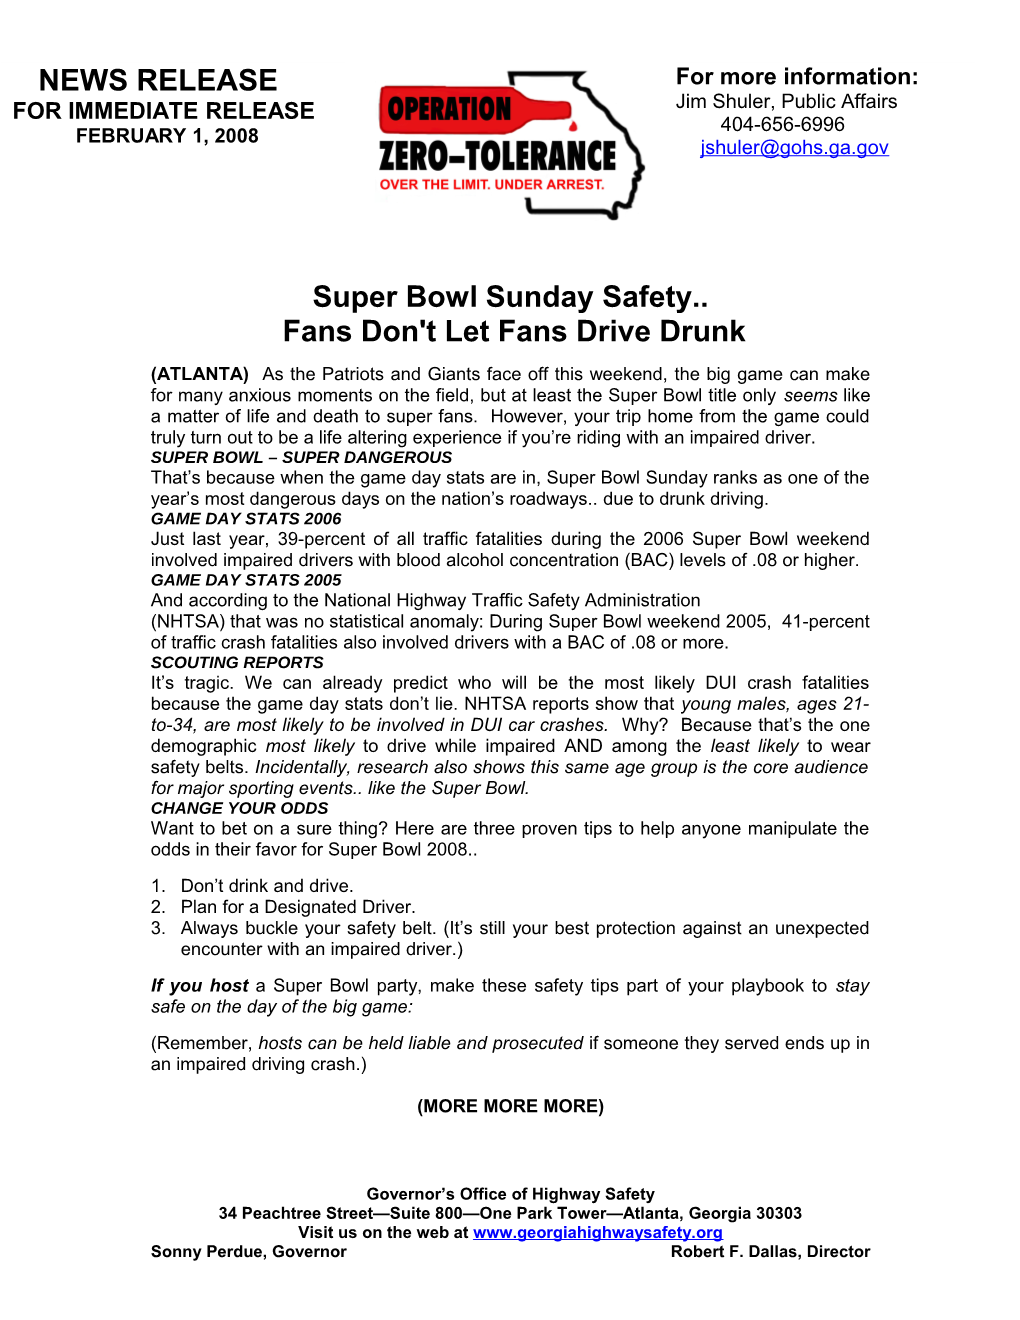 Fans Don't Let Fans Drive Drunk